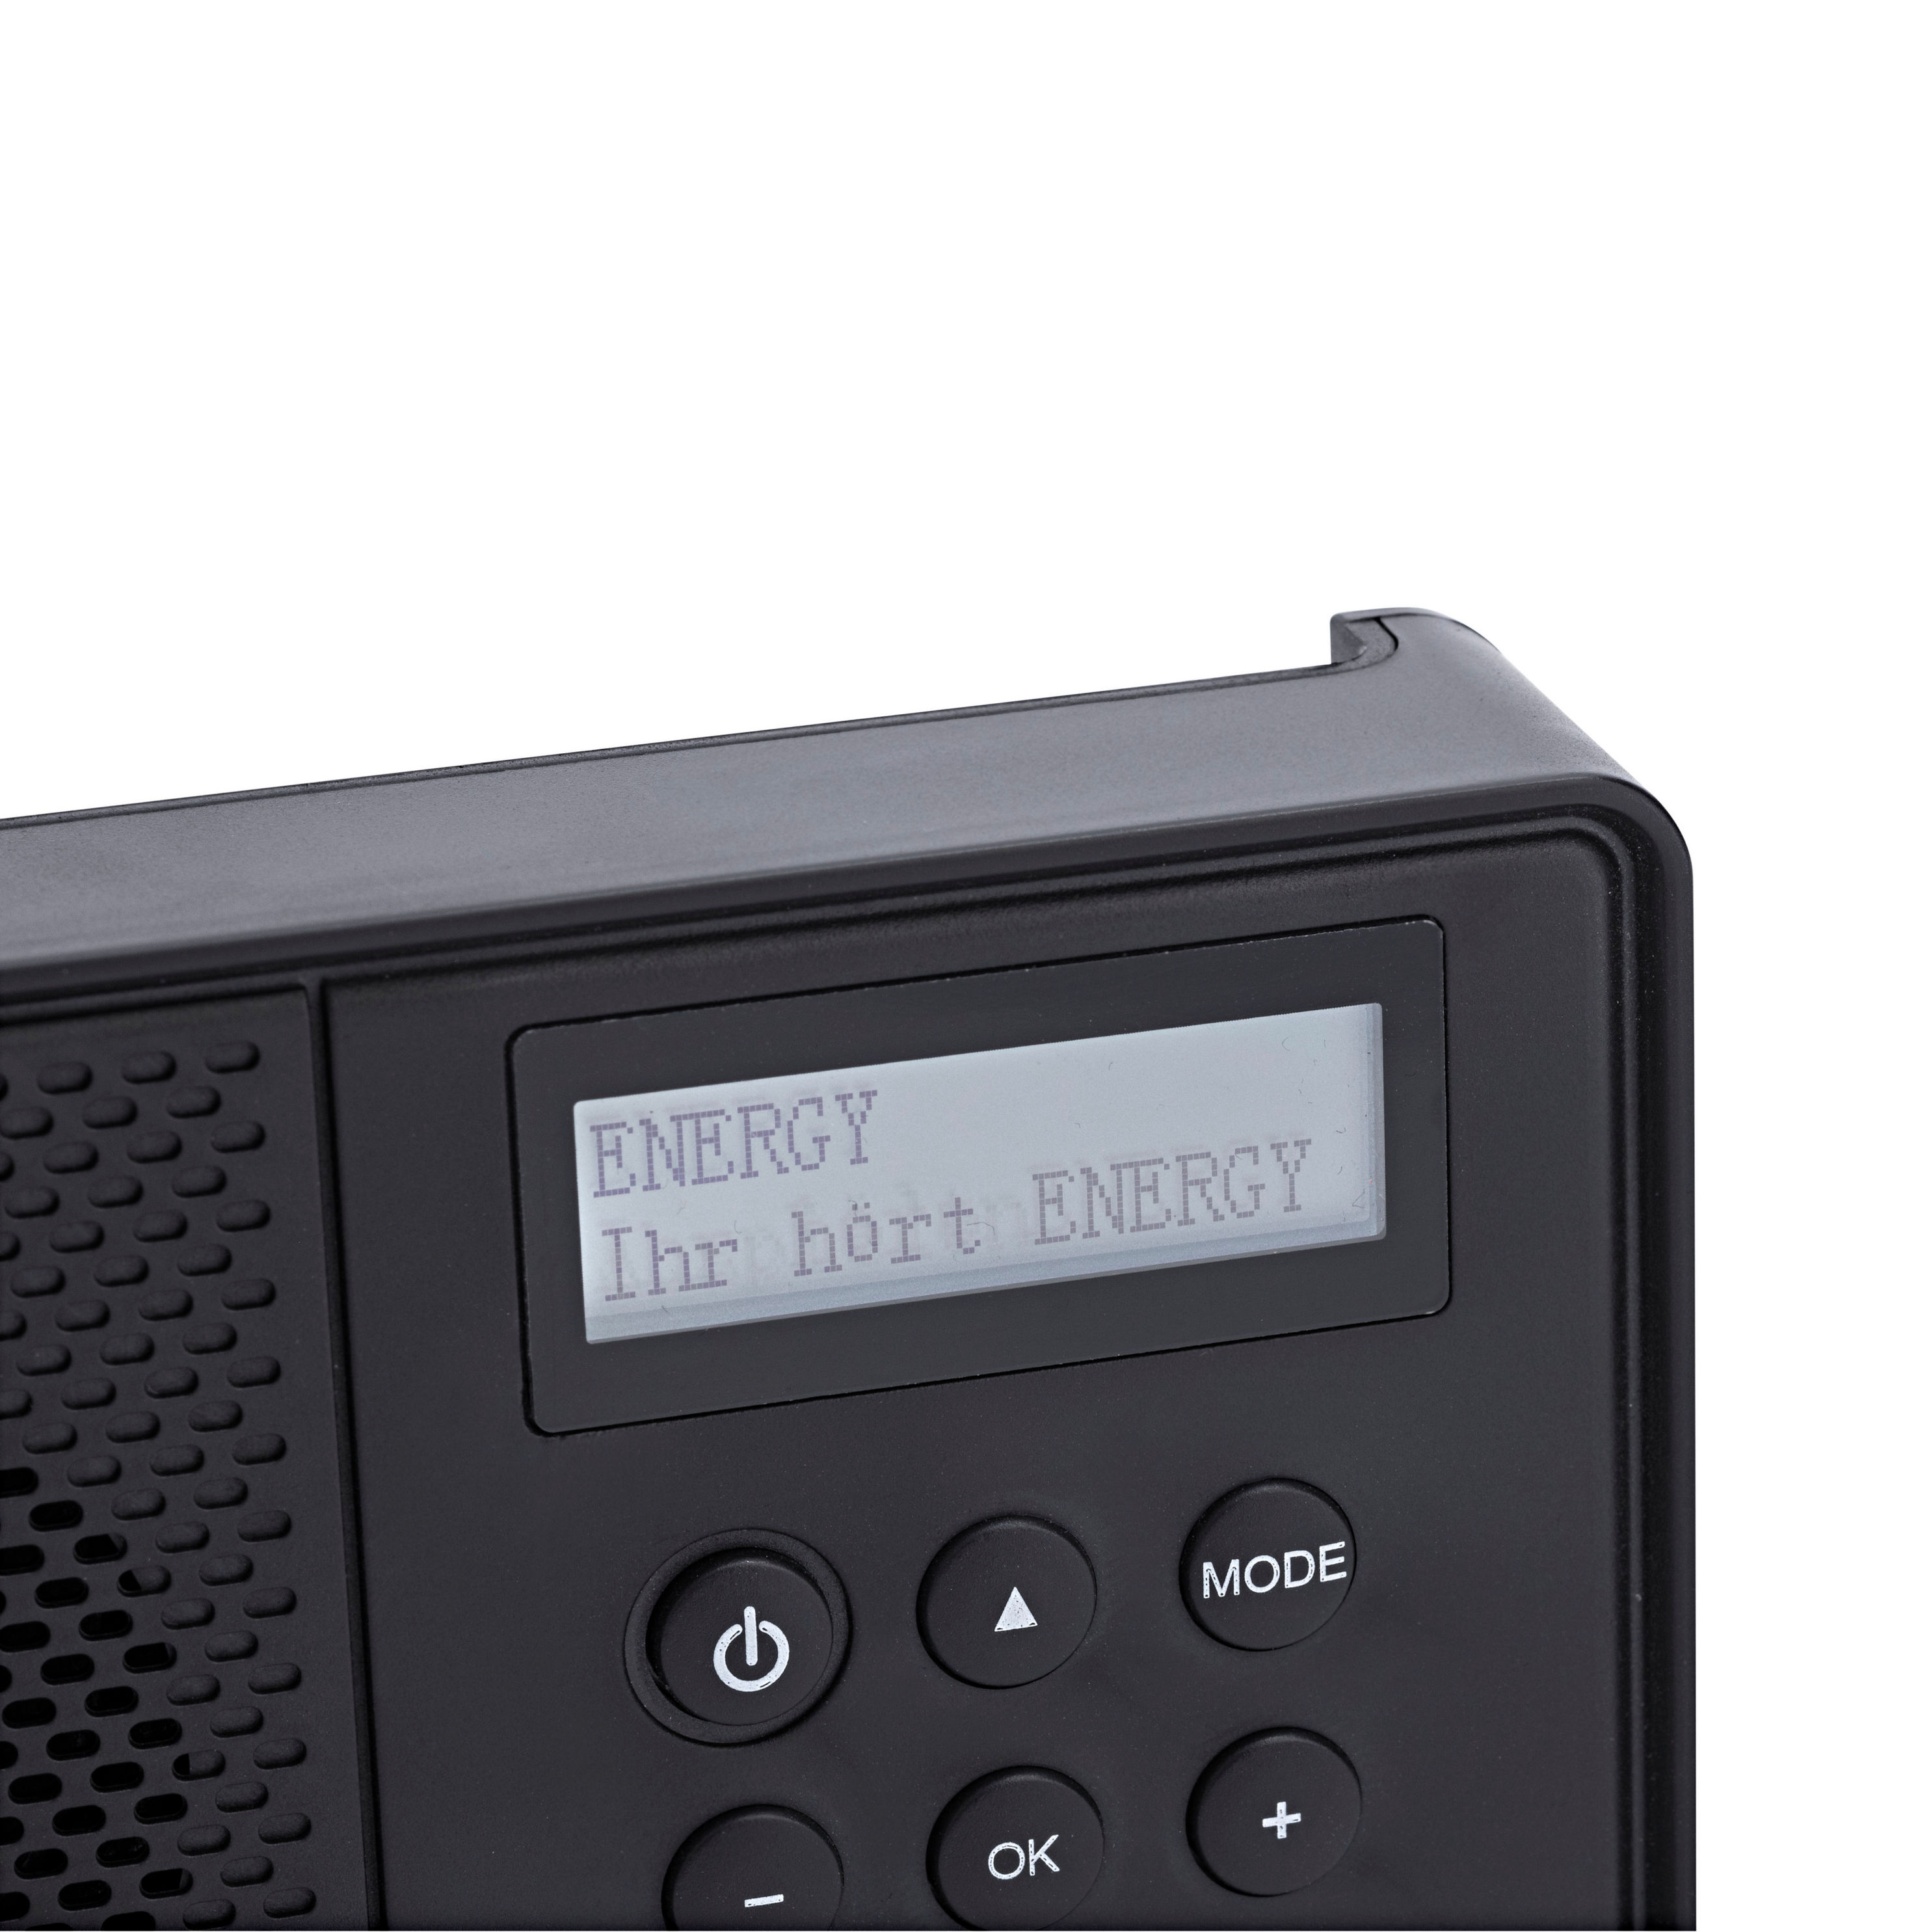 Tragbares DAB Radio jetzt bei Weltbild.de bestellen